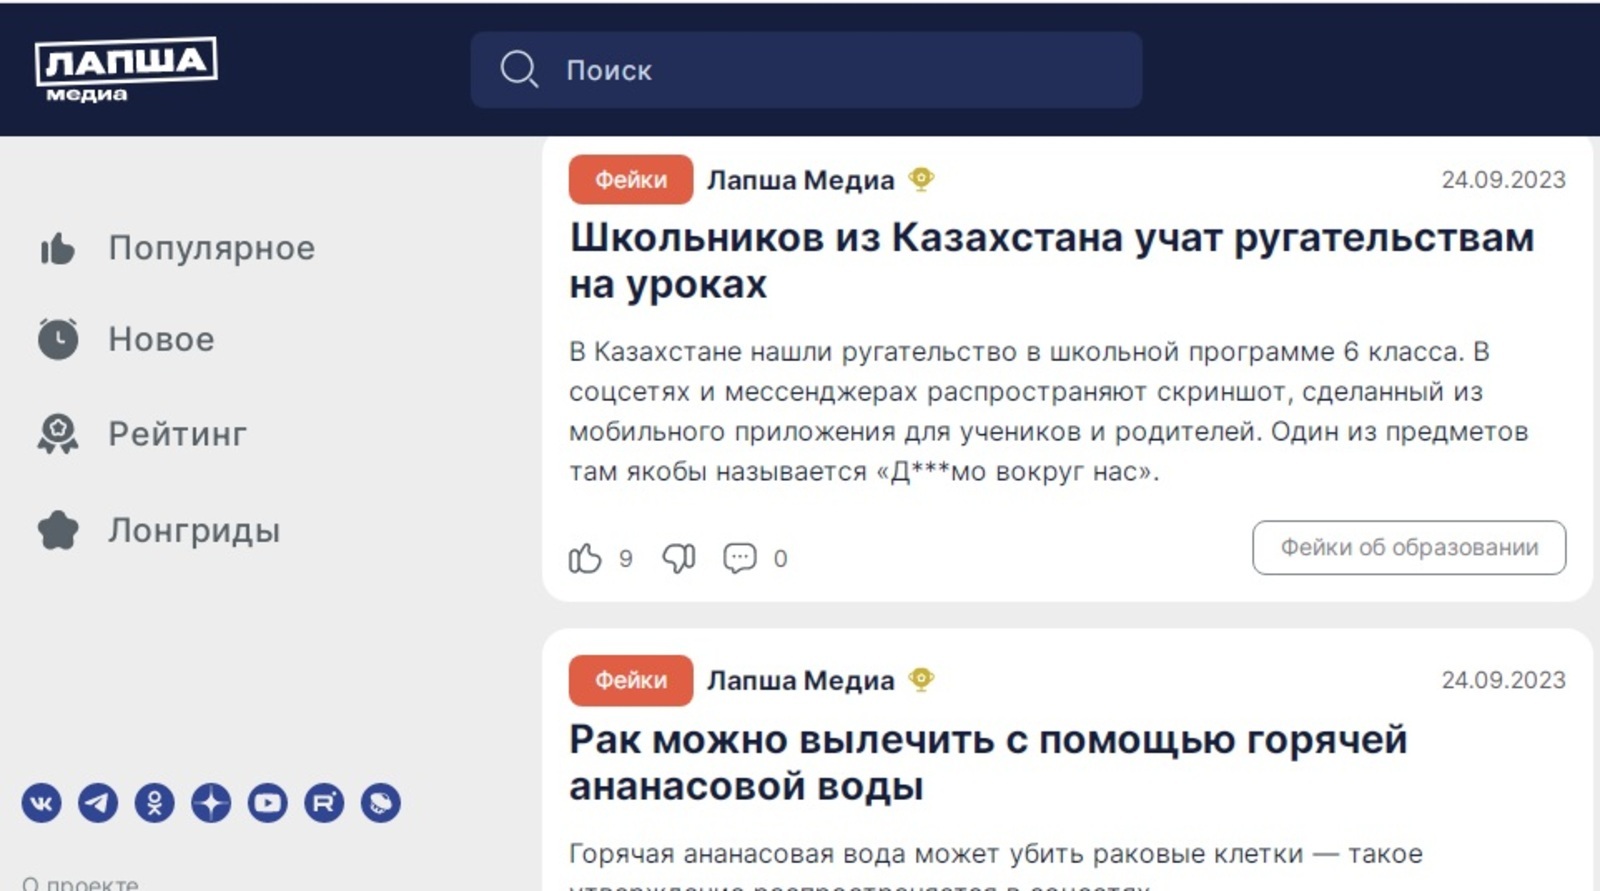 Жители Башкортостана смогут разоблачать недостоверную информацию в сети